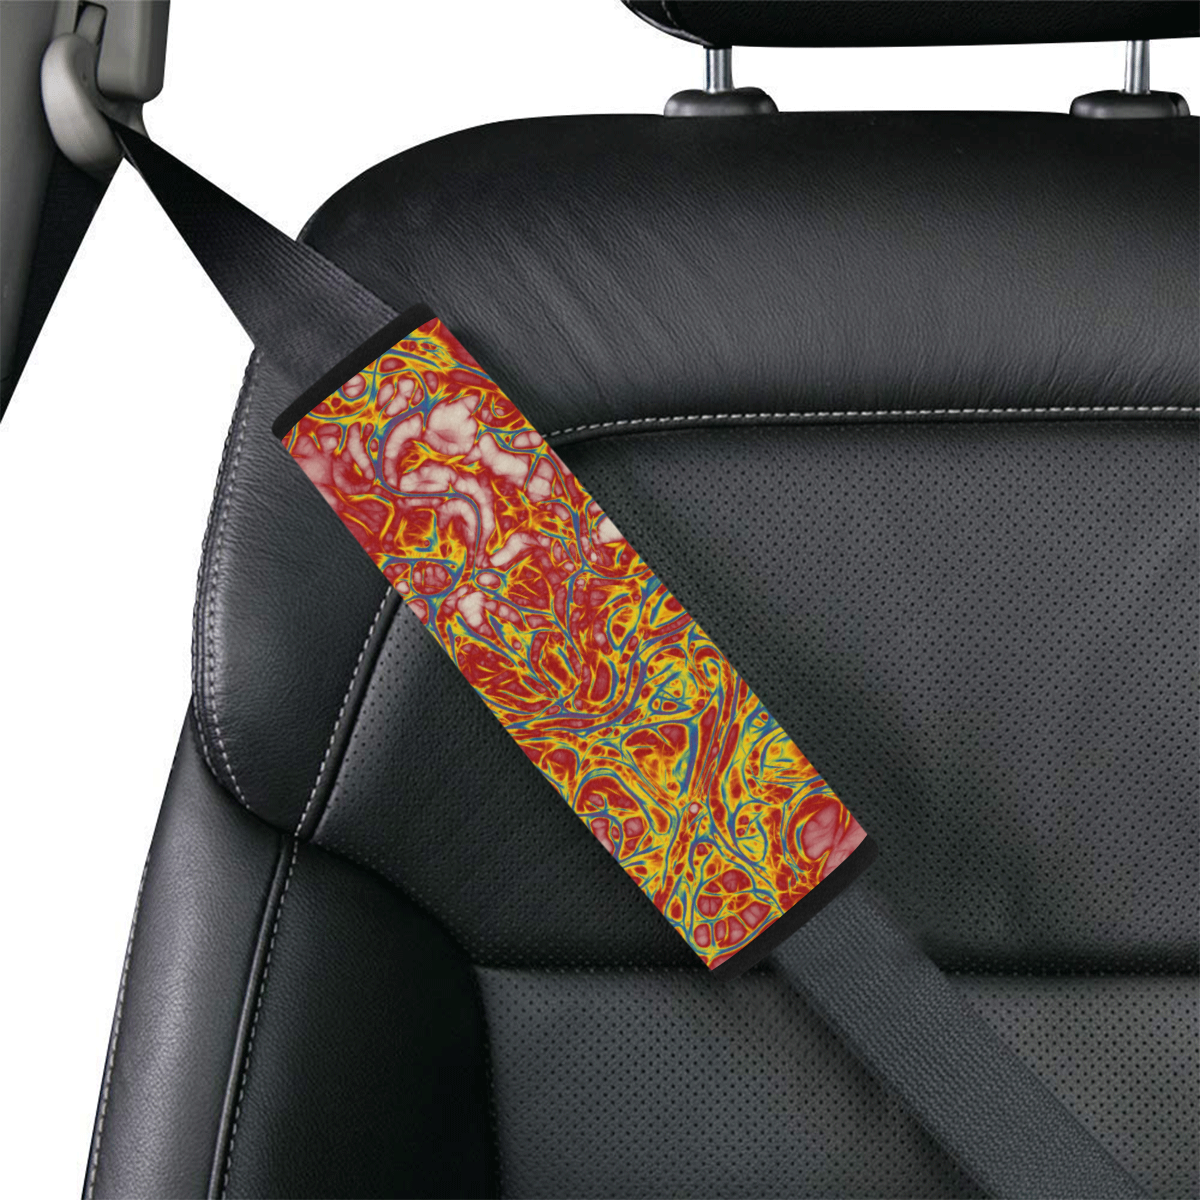 Fractal Batik ART - Hippie Blue Branches Car Seat Belt Cover 7''x8.5''